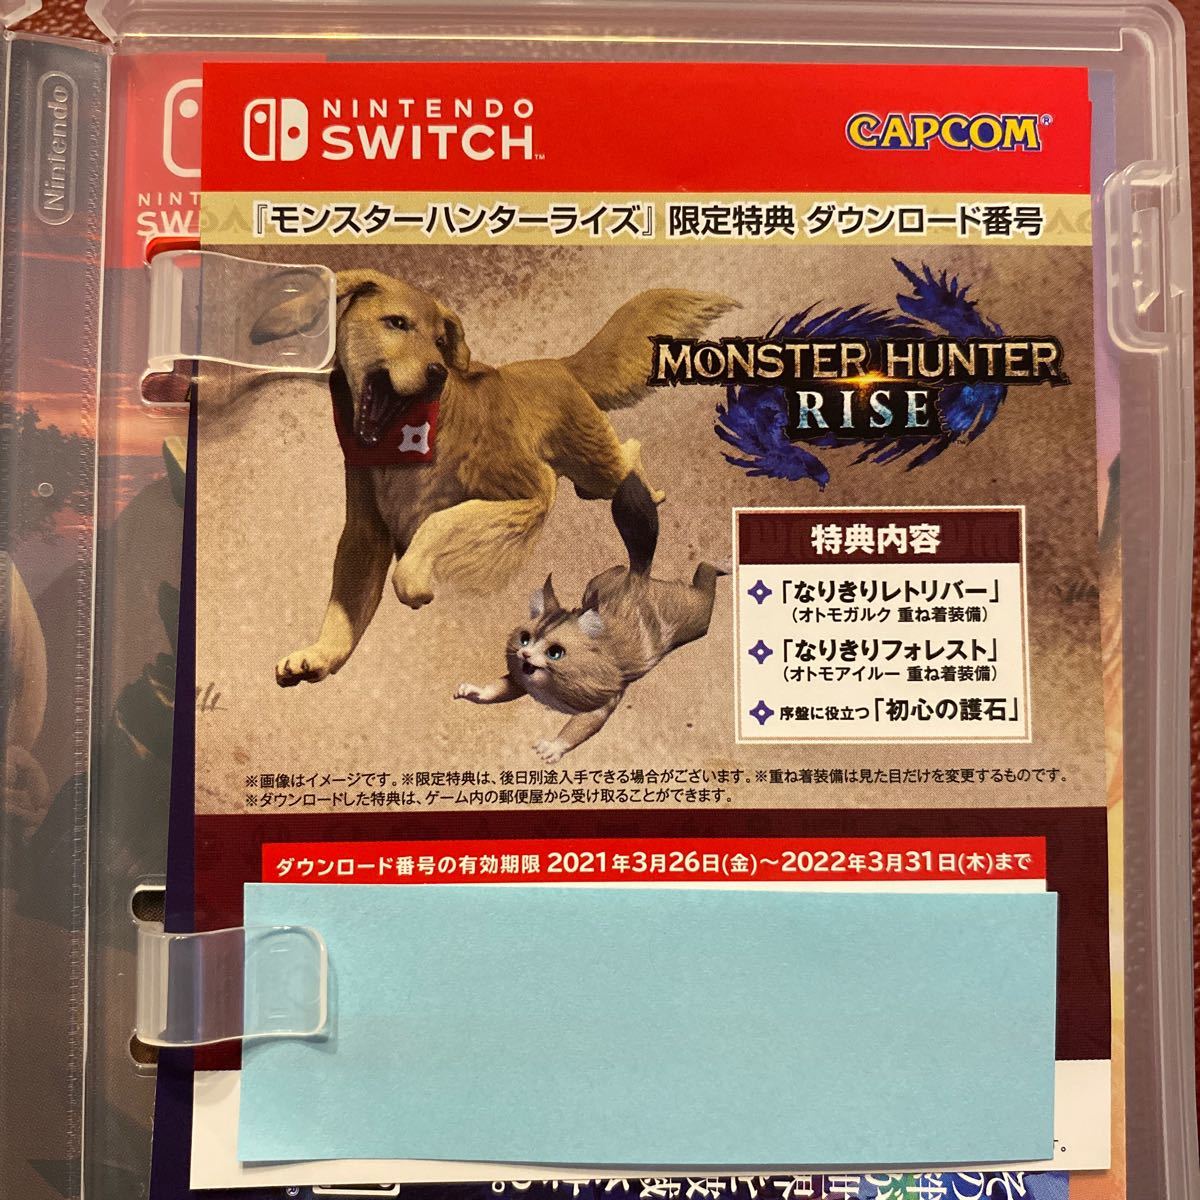 Nintendo Switchモンスターハンターライズ 限定特典ダウンロード番号(未使用)付き